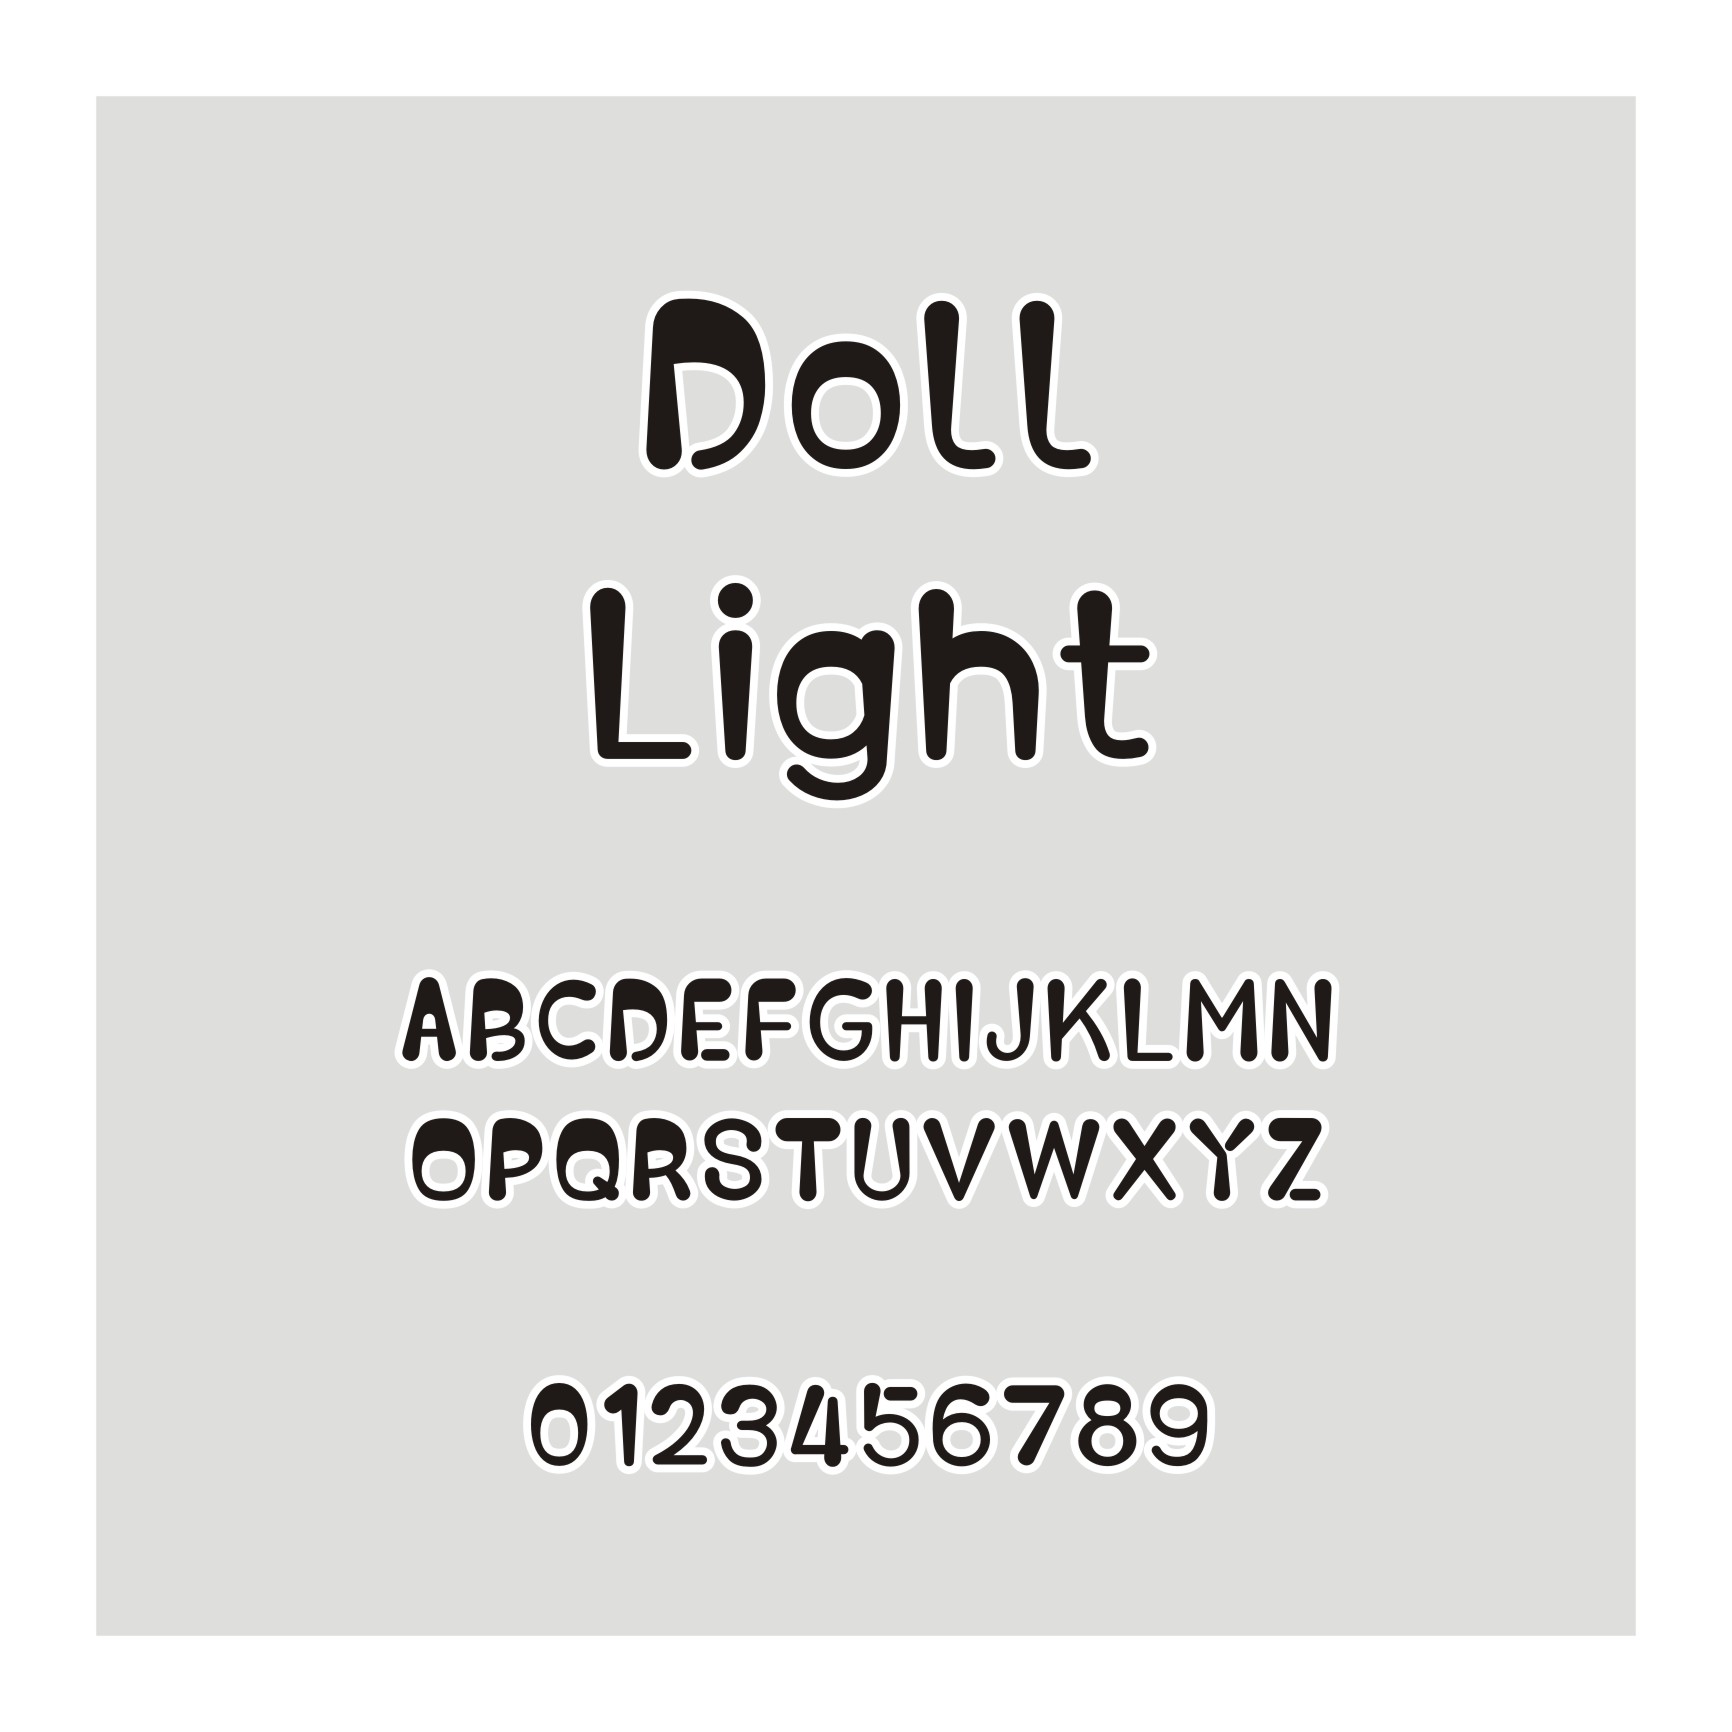 Doll Light